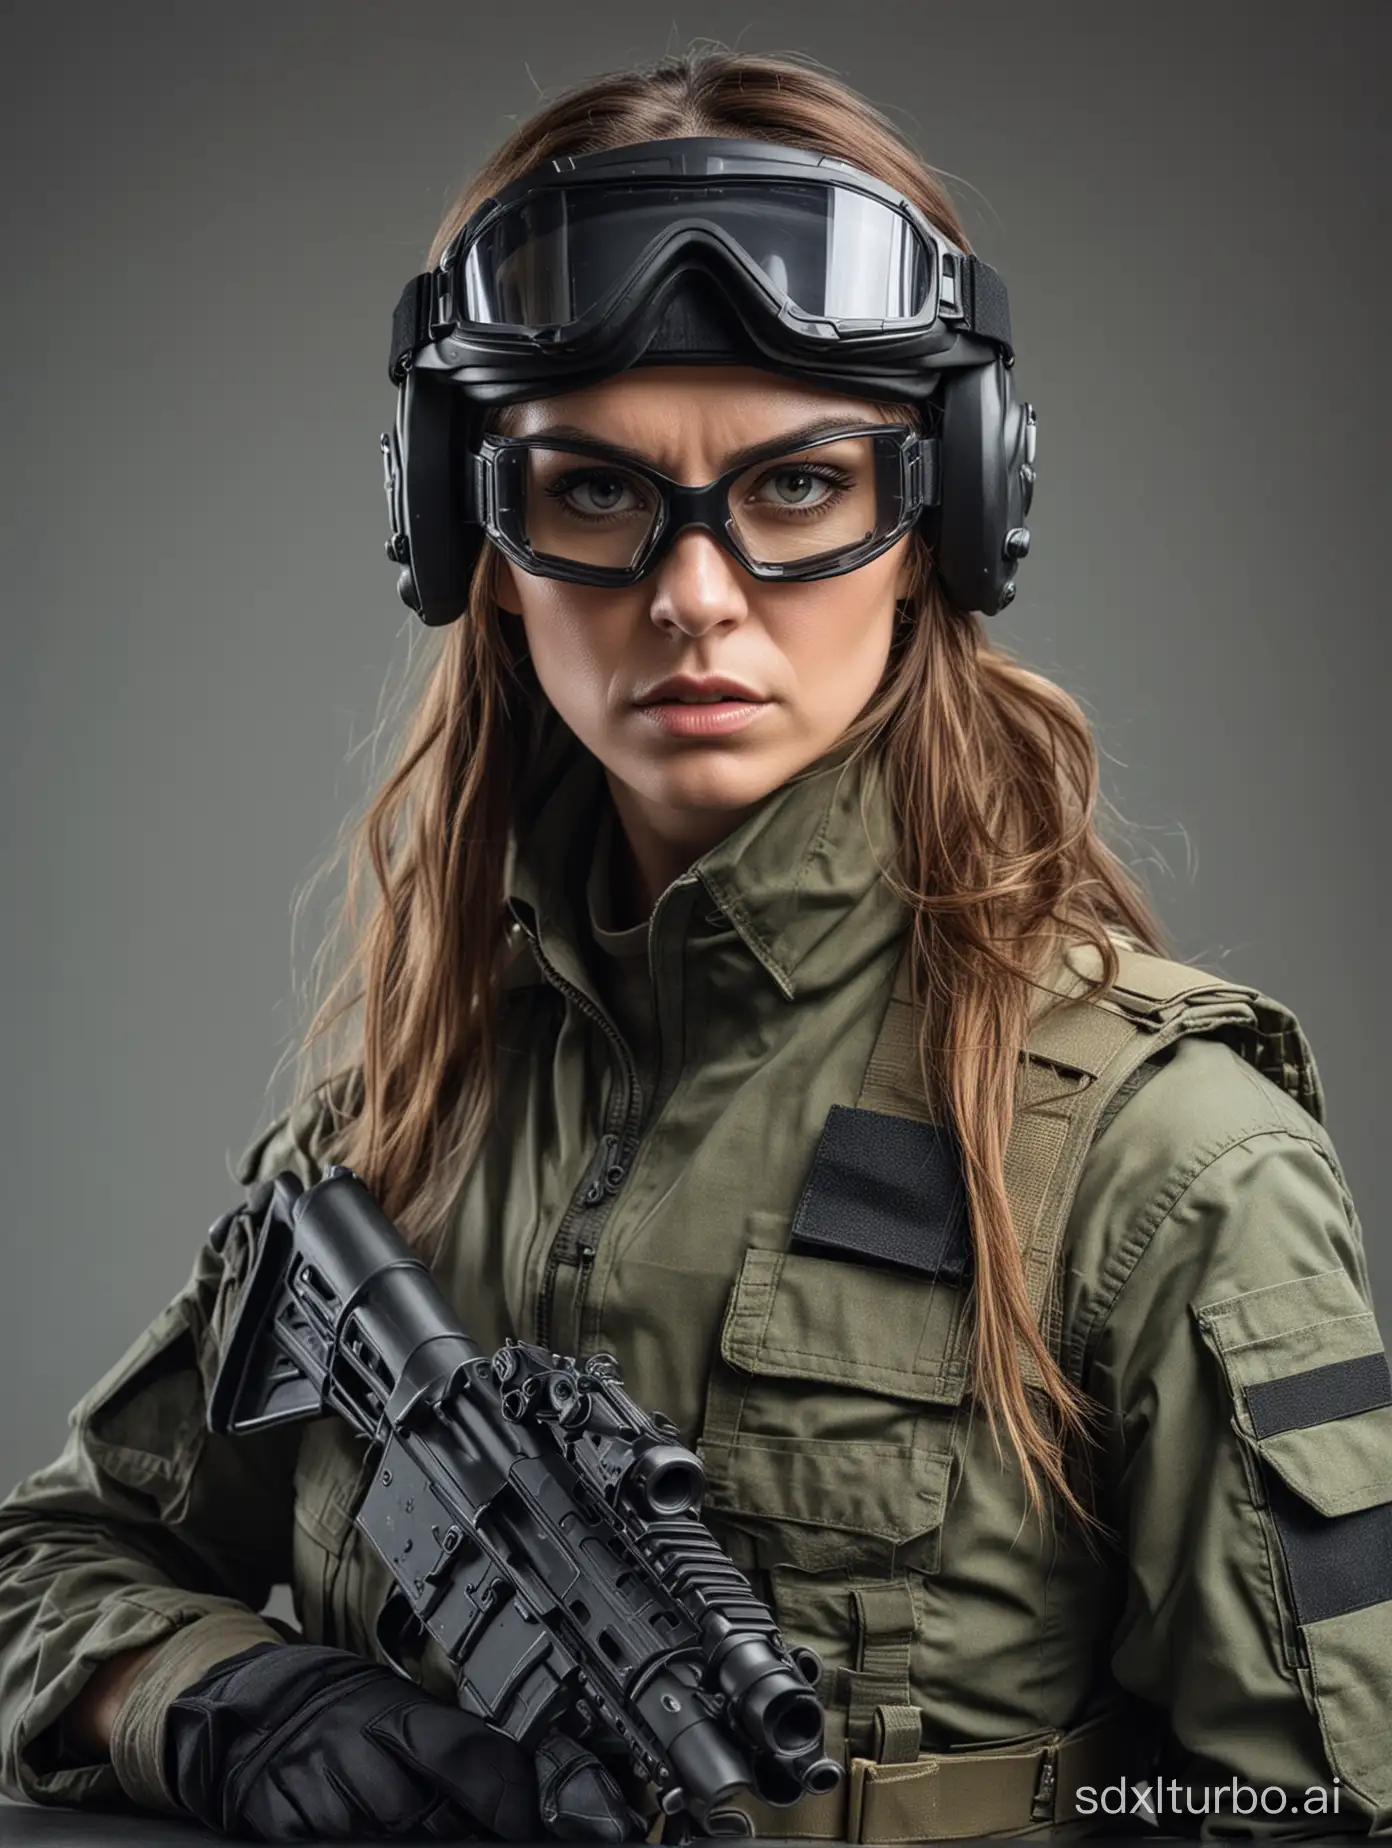 una mujer, hermosa, con cara de mal humor, con ropa militar táctica, con casco y antiparras tácticas, sosteniendo una pistola